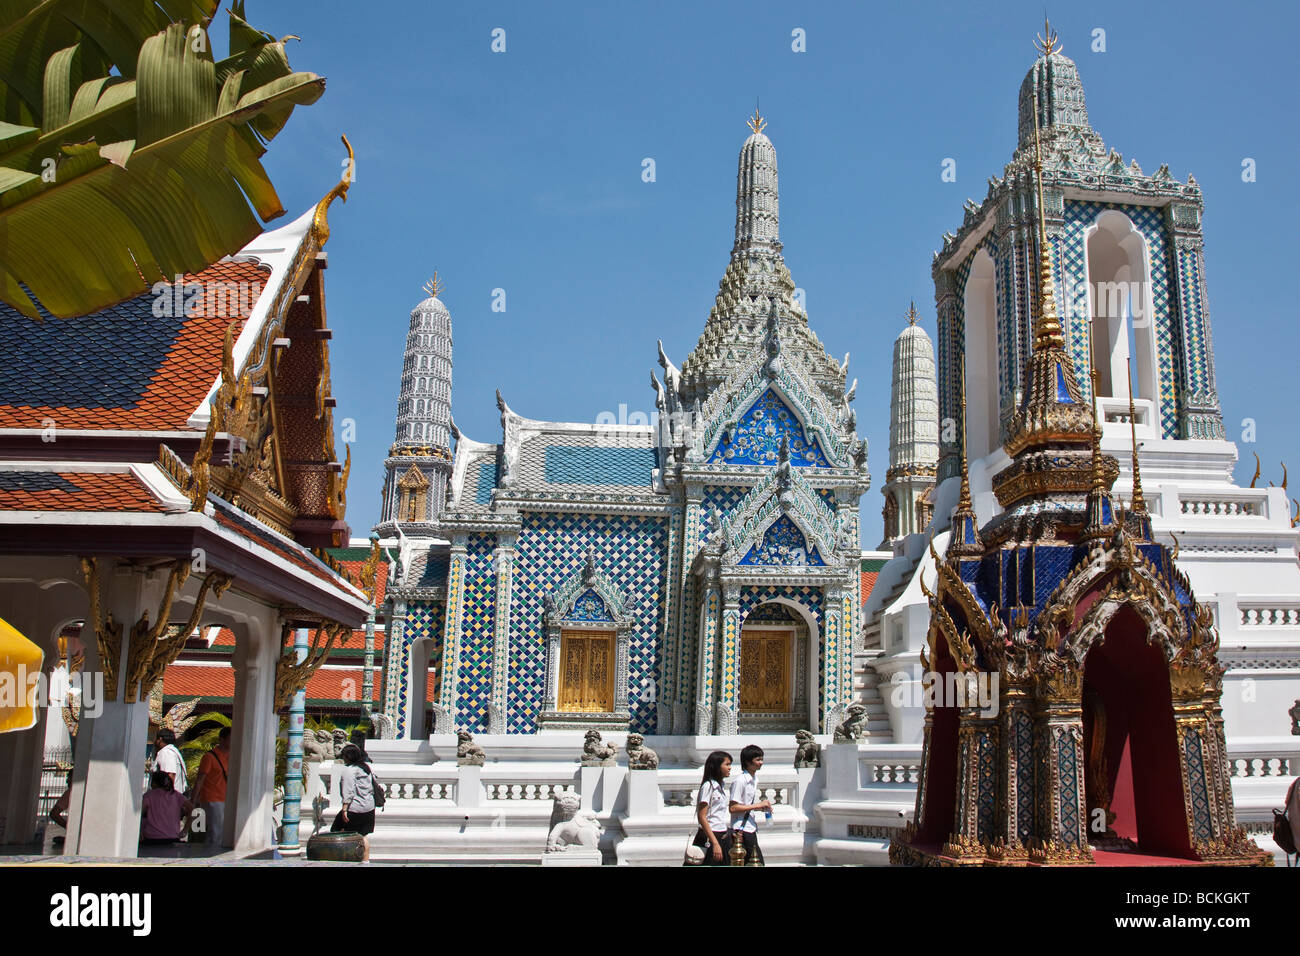 Thailandia, Bangkok. Alcuni degli splendidi templi buddisti e santuari del Re di Thailandia s Royal Grand Palace. Foto Stock